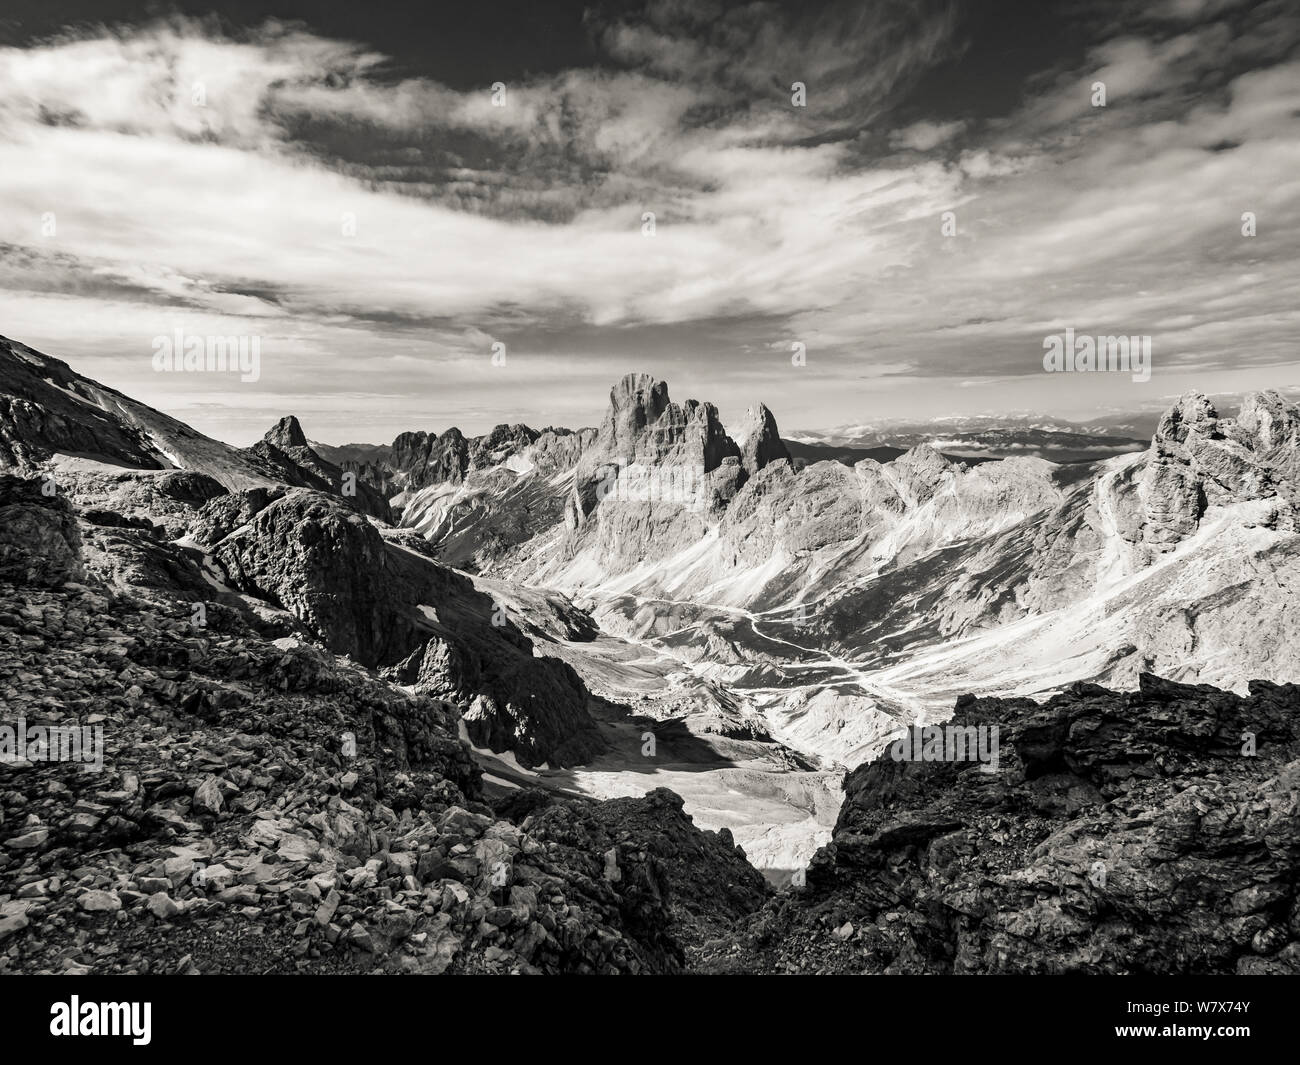 Paysage de montagnes escarpées en monochrome des principaux sommets de l'ensemble de montagnes Rosengarten dans les Dolomites italiennes de l'Alto Adige. Banque D'Images